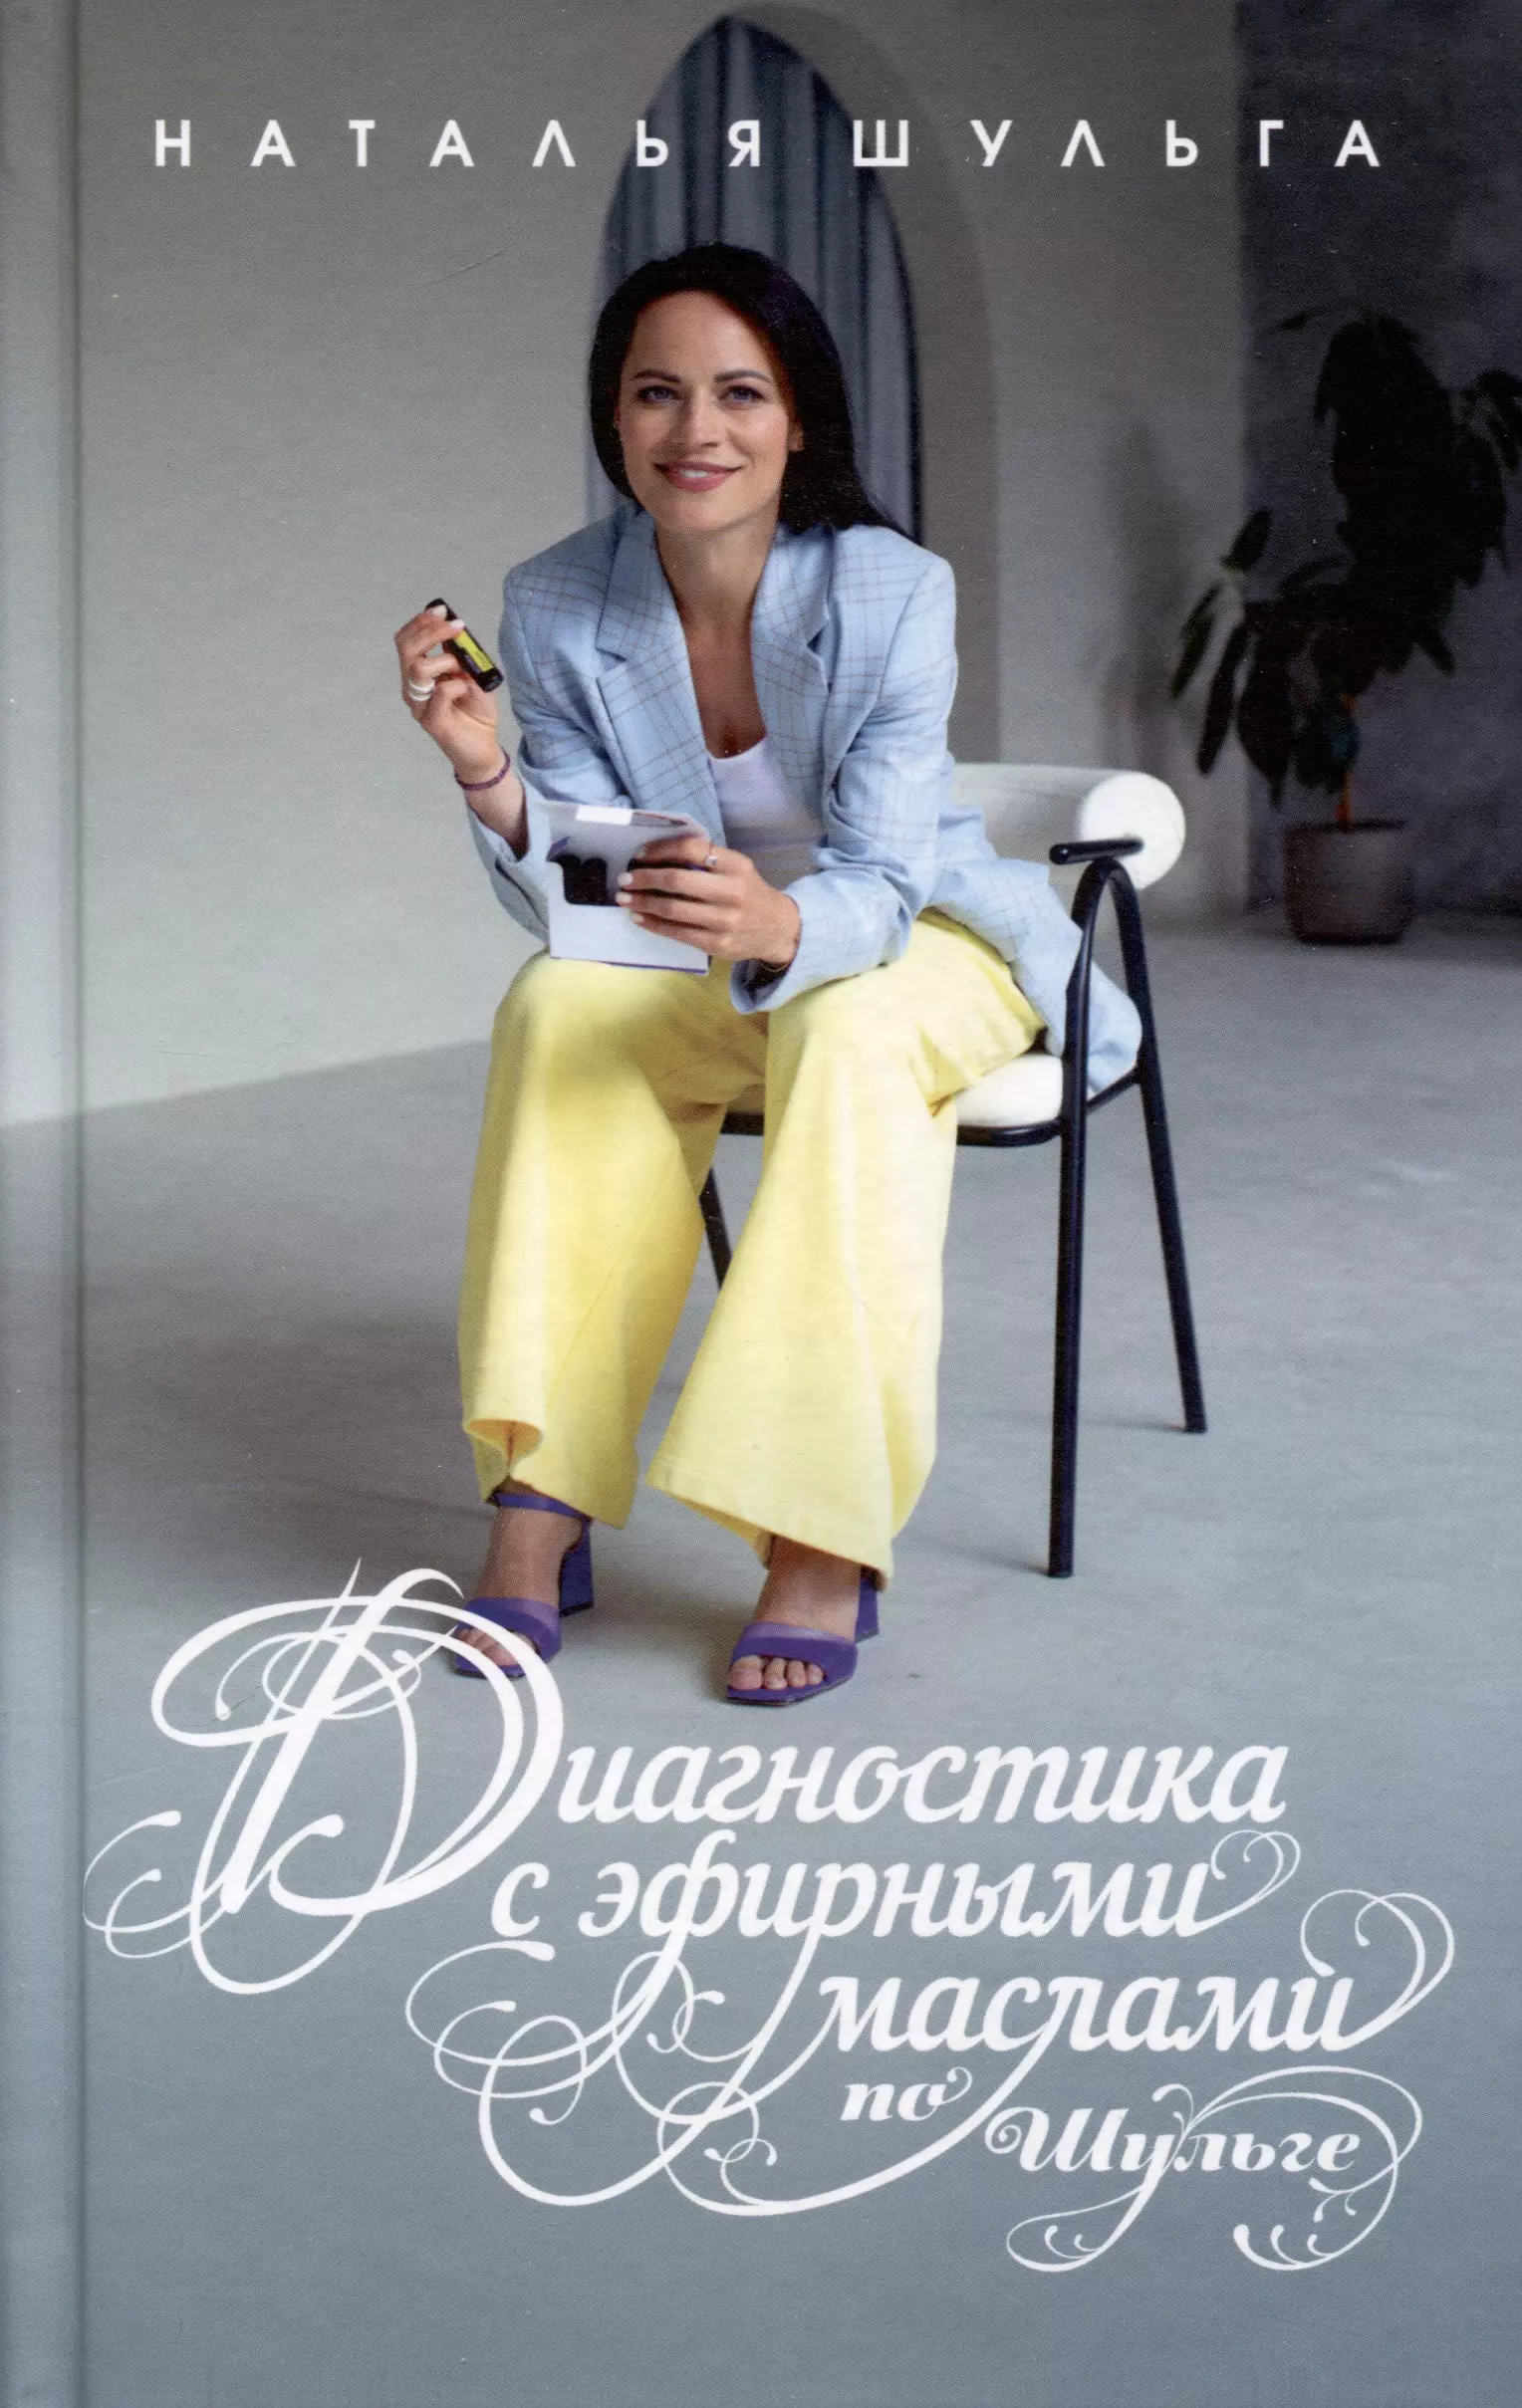 Шульга Наталья Диагностика с эфирными маслами по Шульге шульга наталья ароматерапия по шульге